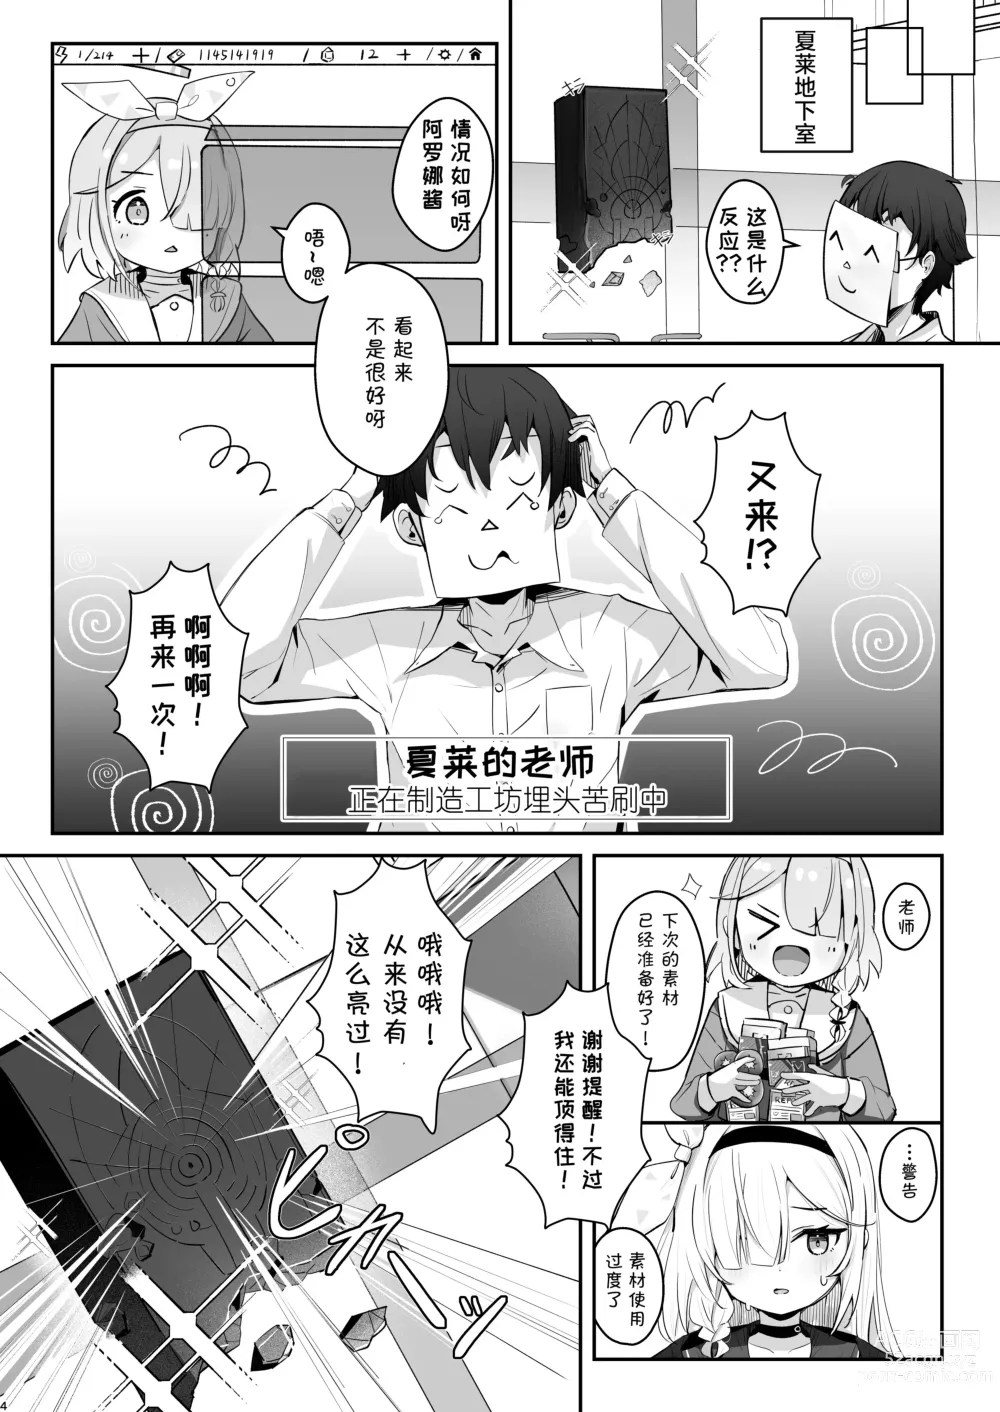 Page 5 of doujinshi 得知了这份温暖之后。